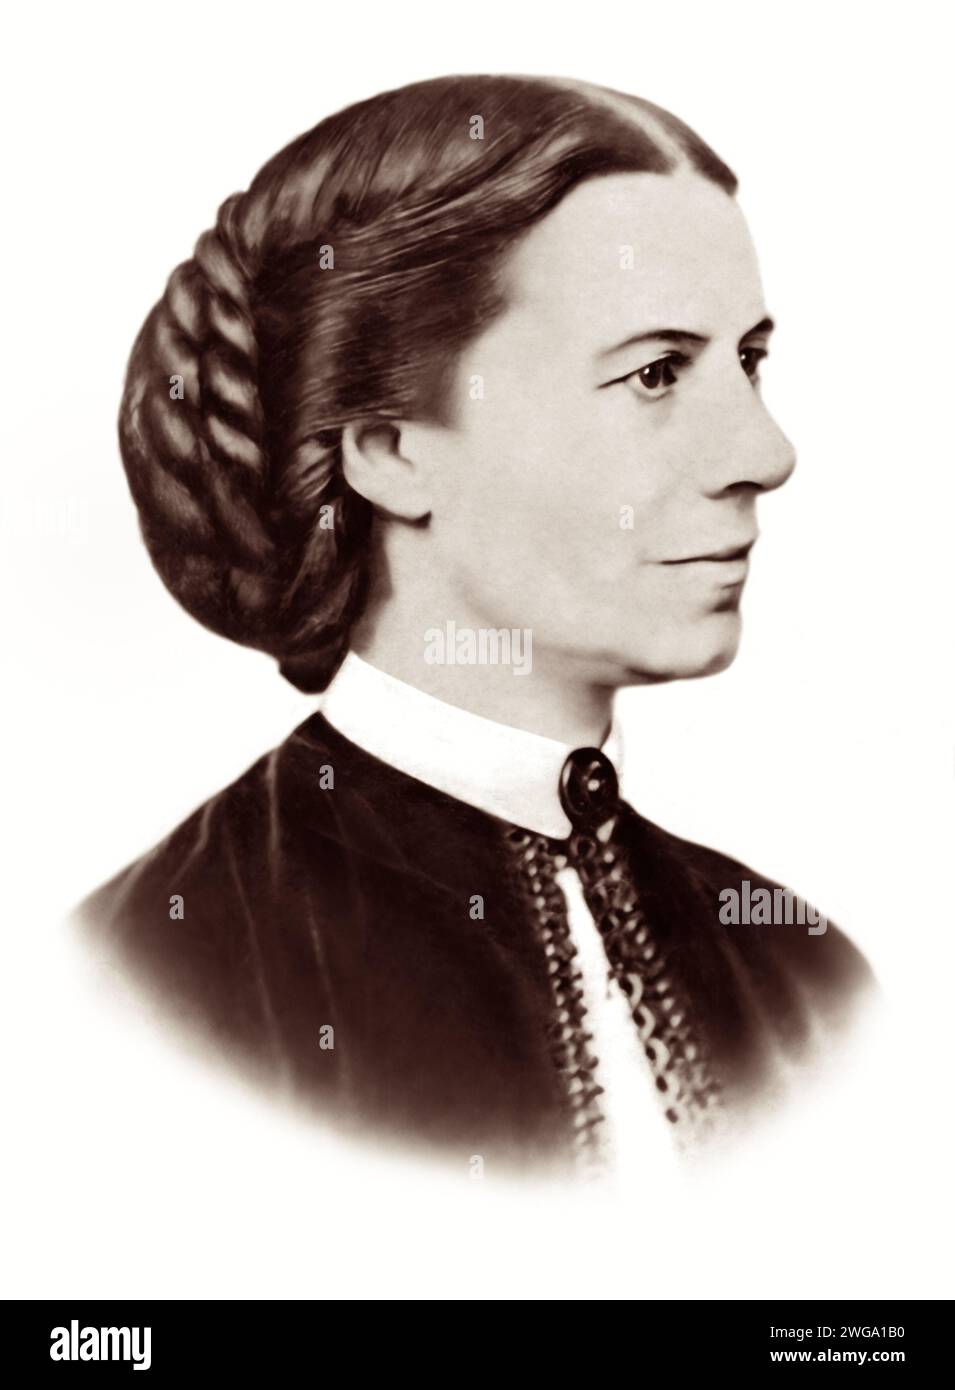 Clara (Clarissa Harlowe) Barton (1821-1912), infermiera americana autodidatta che fondò la Croce Rossa americana. Foto Stock